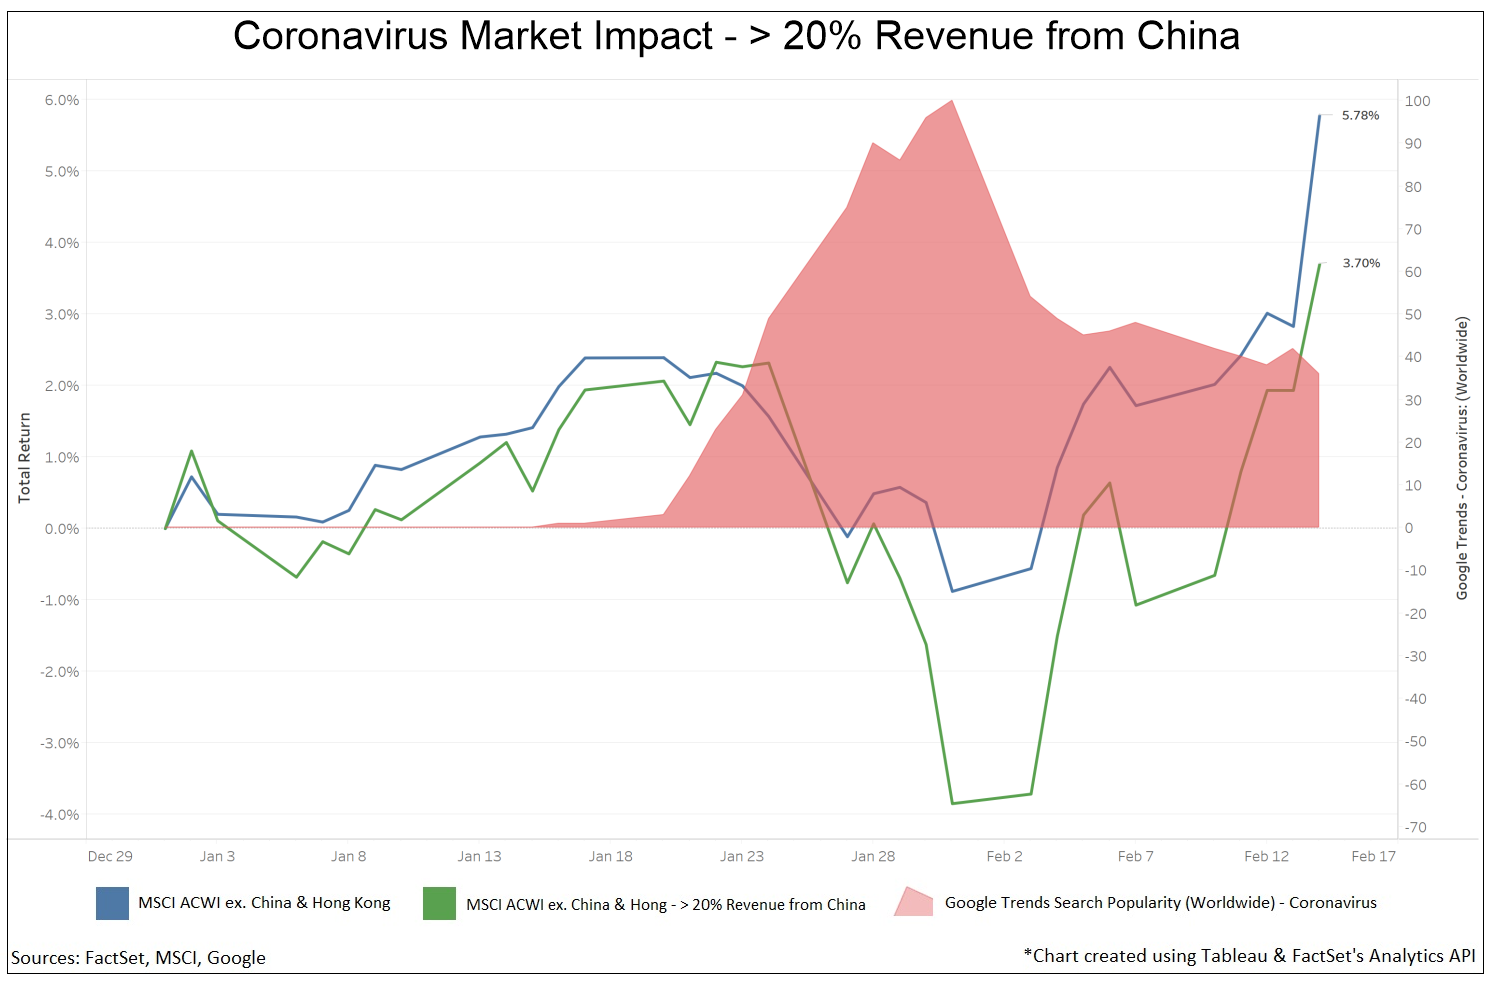 Coronavirus Market Impact - China Revenue